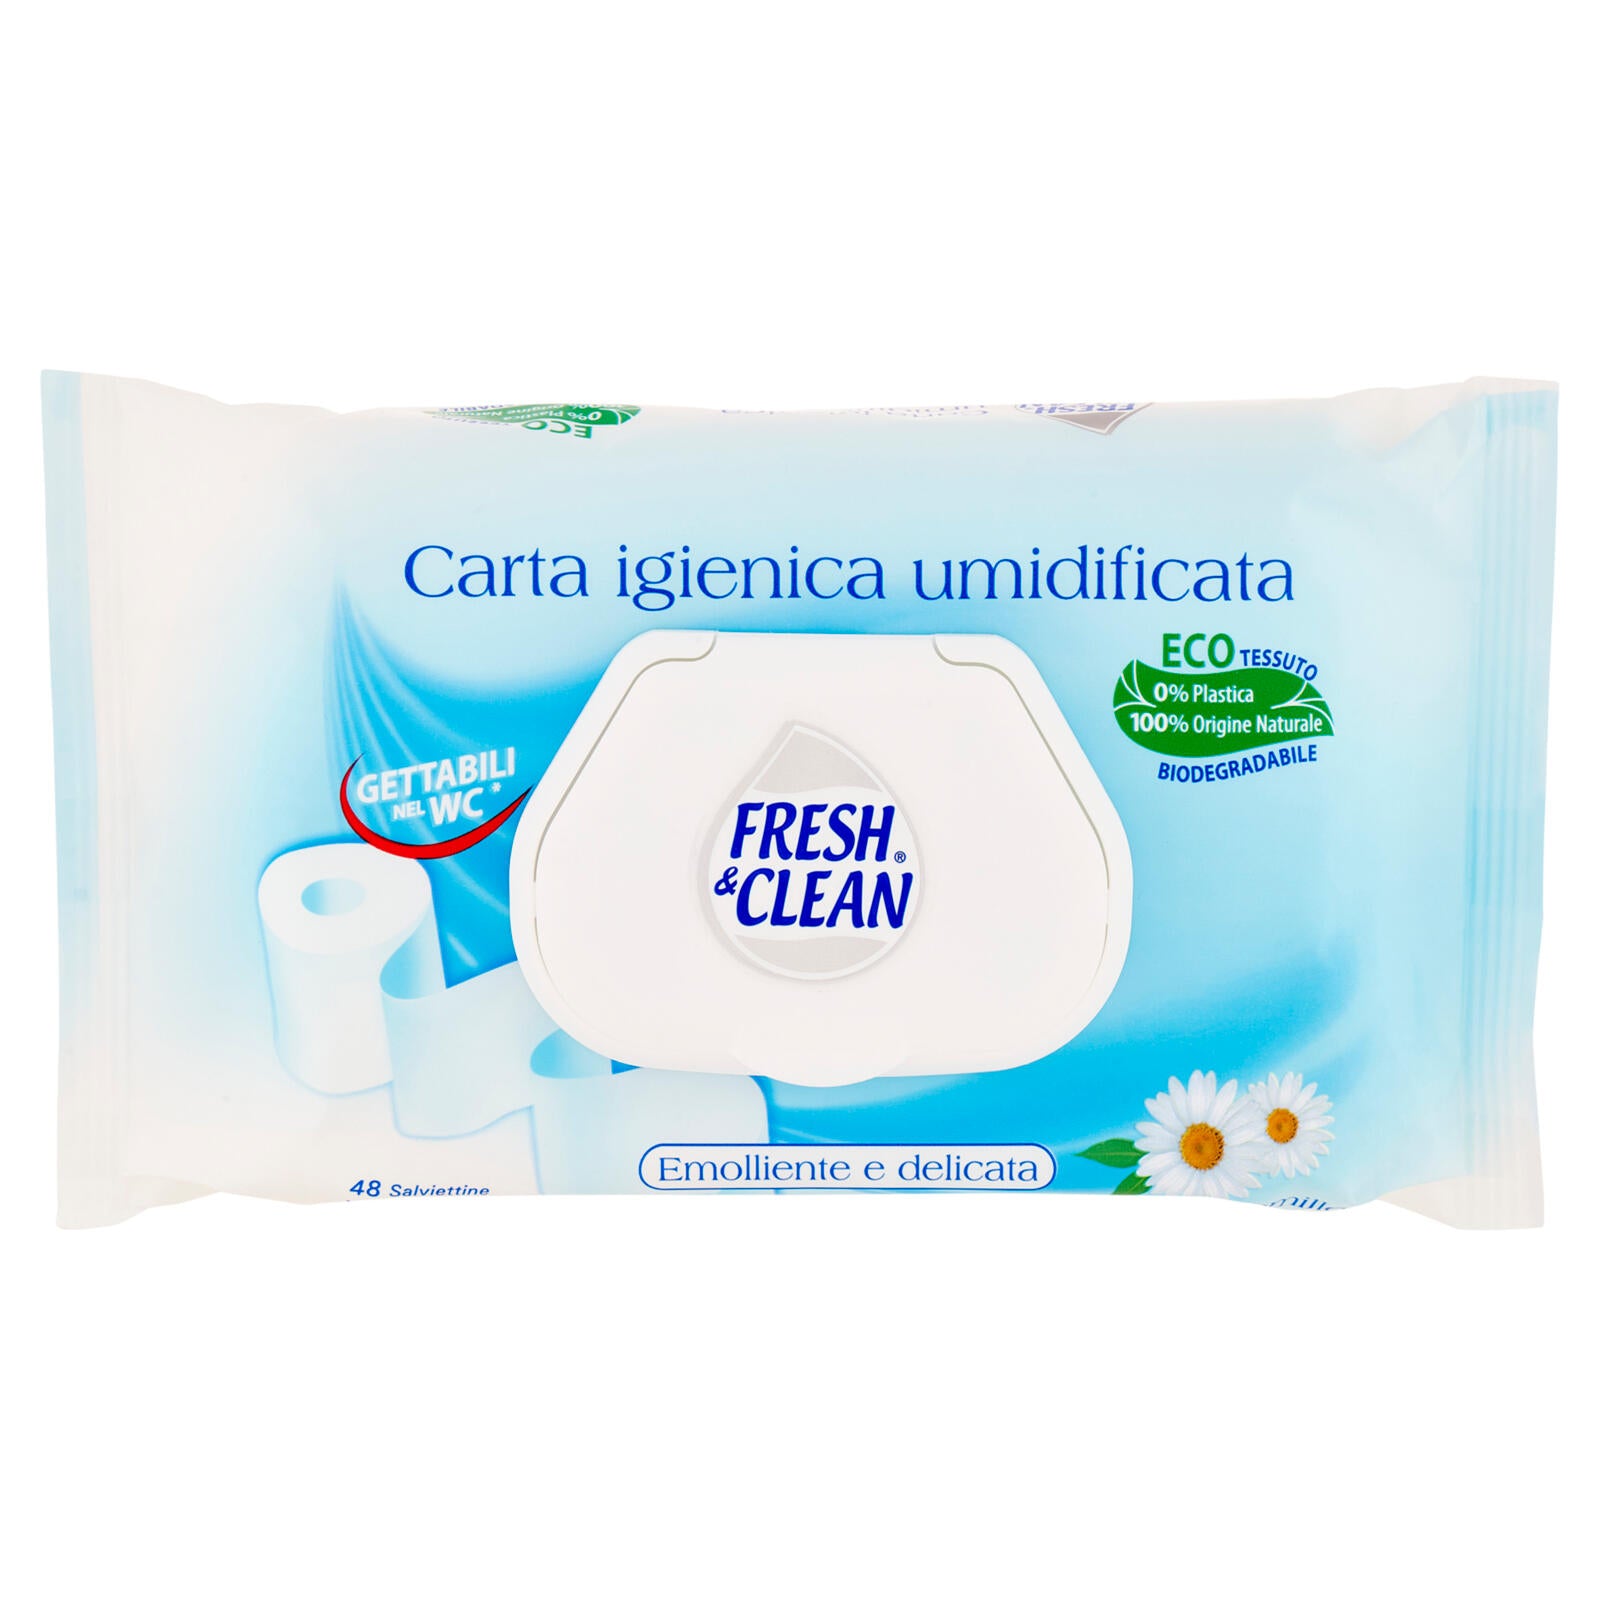 Fresh & Clean Carta igienica umidificata Salviettine alla Camomilla 48 pz